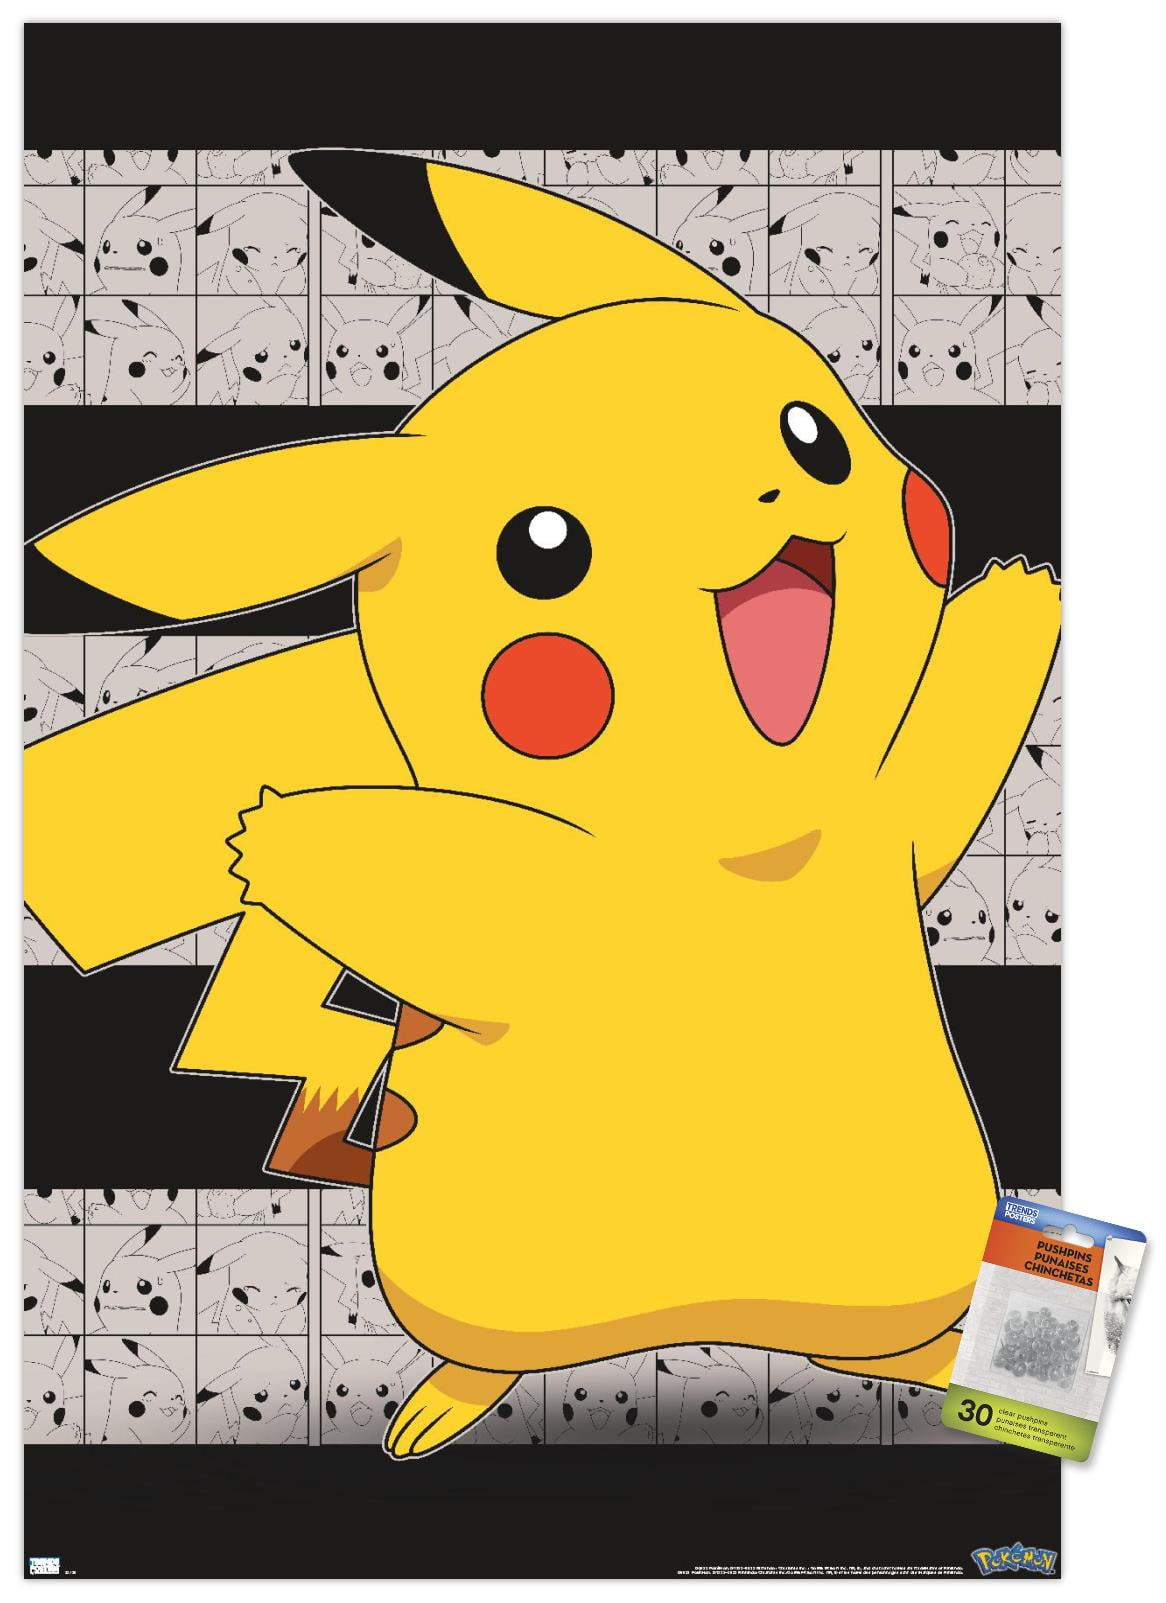 Pikachu com Fundo Transparente - Imagem em Alta Qualidade